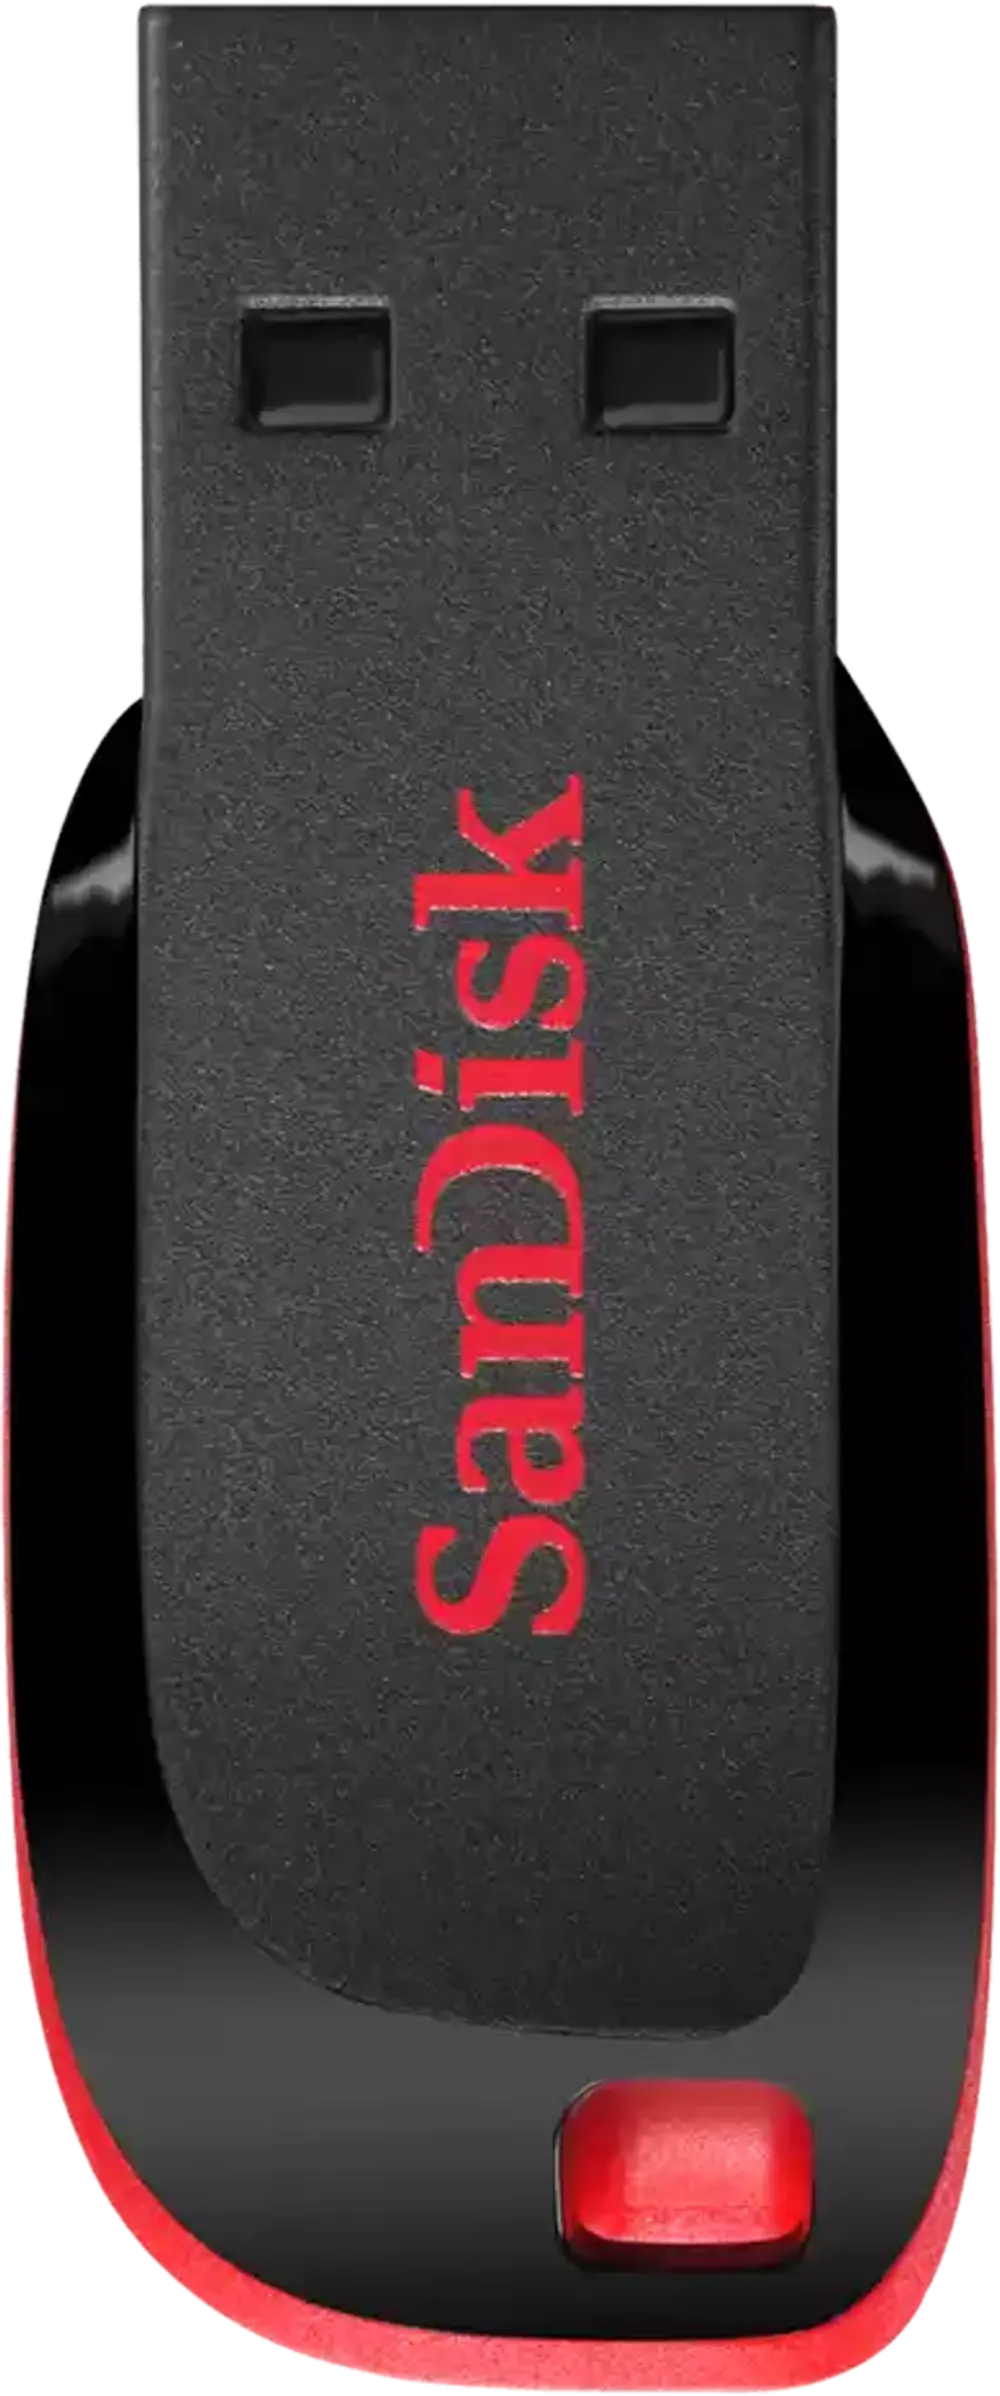 فلاش ميموري سانديسك Cruzer Blade، بسعة 64 جيجابايت، USB 2.0، أسود × أحمر، SDCZ50-064G-B35